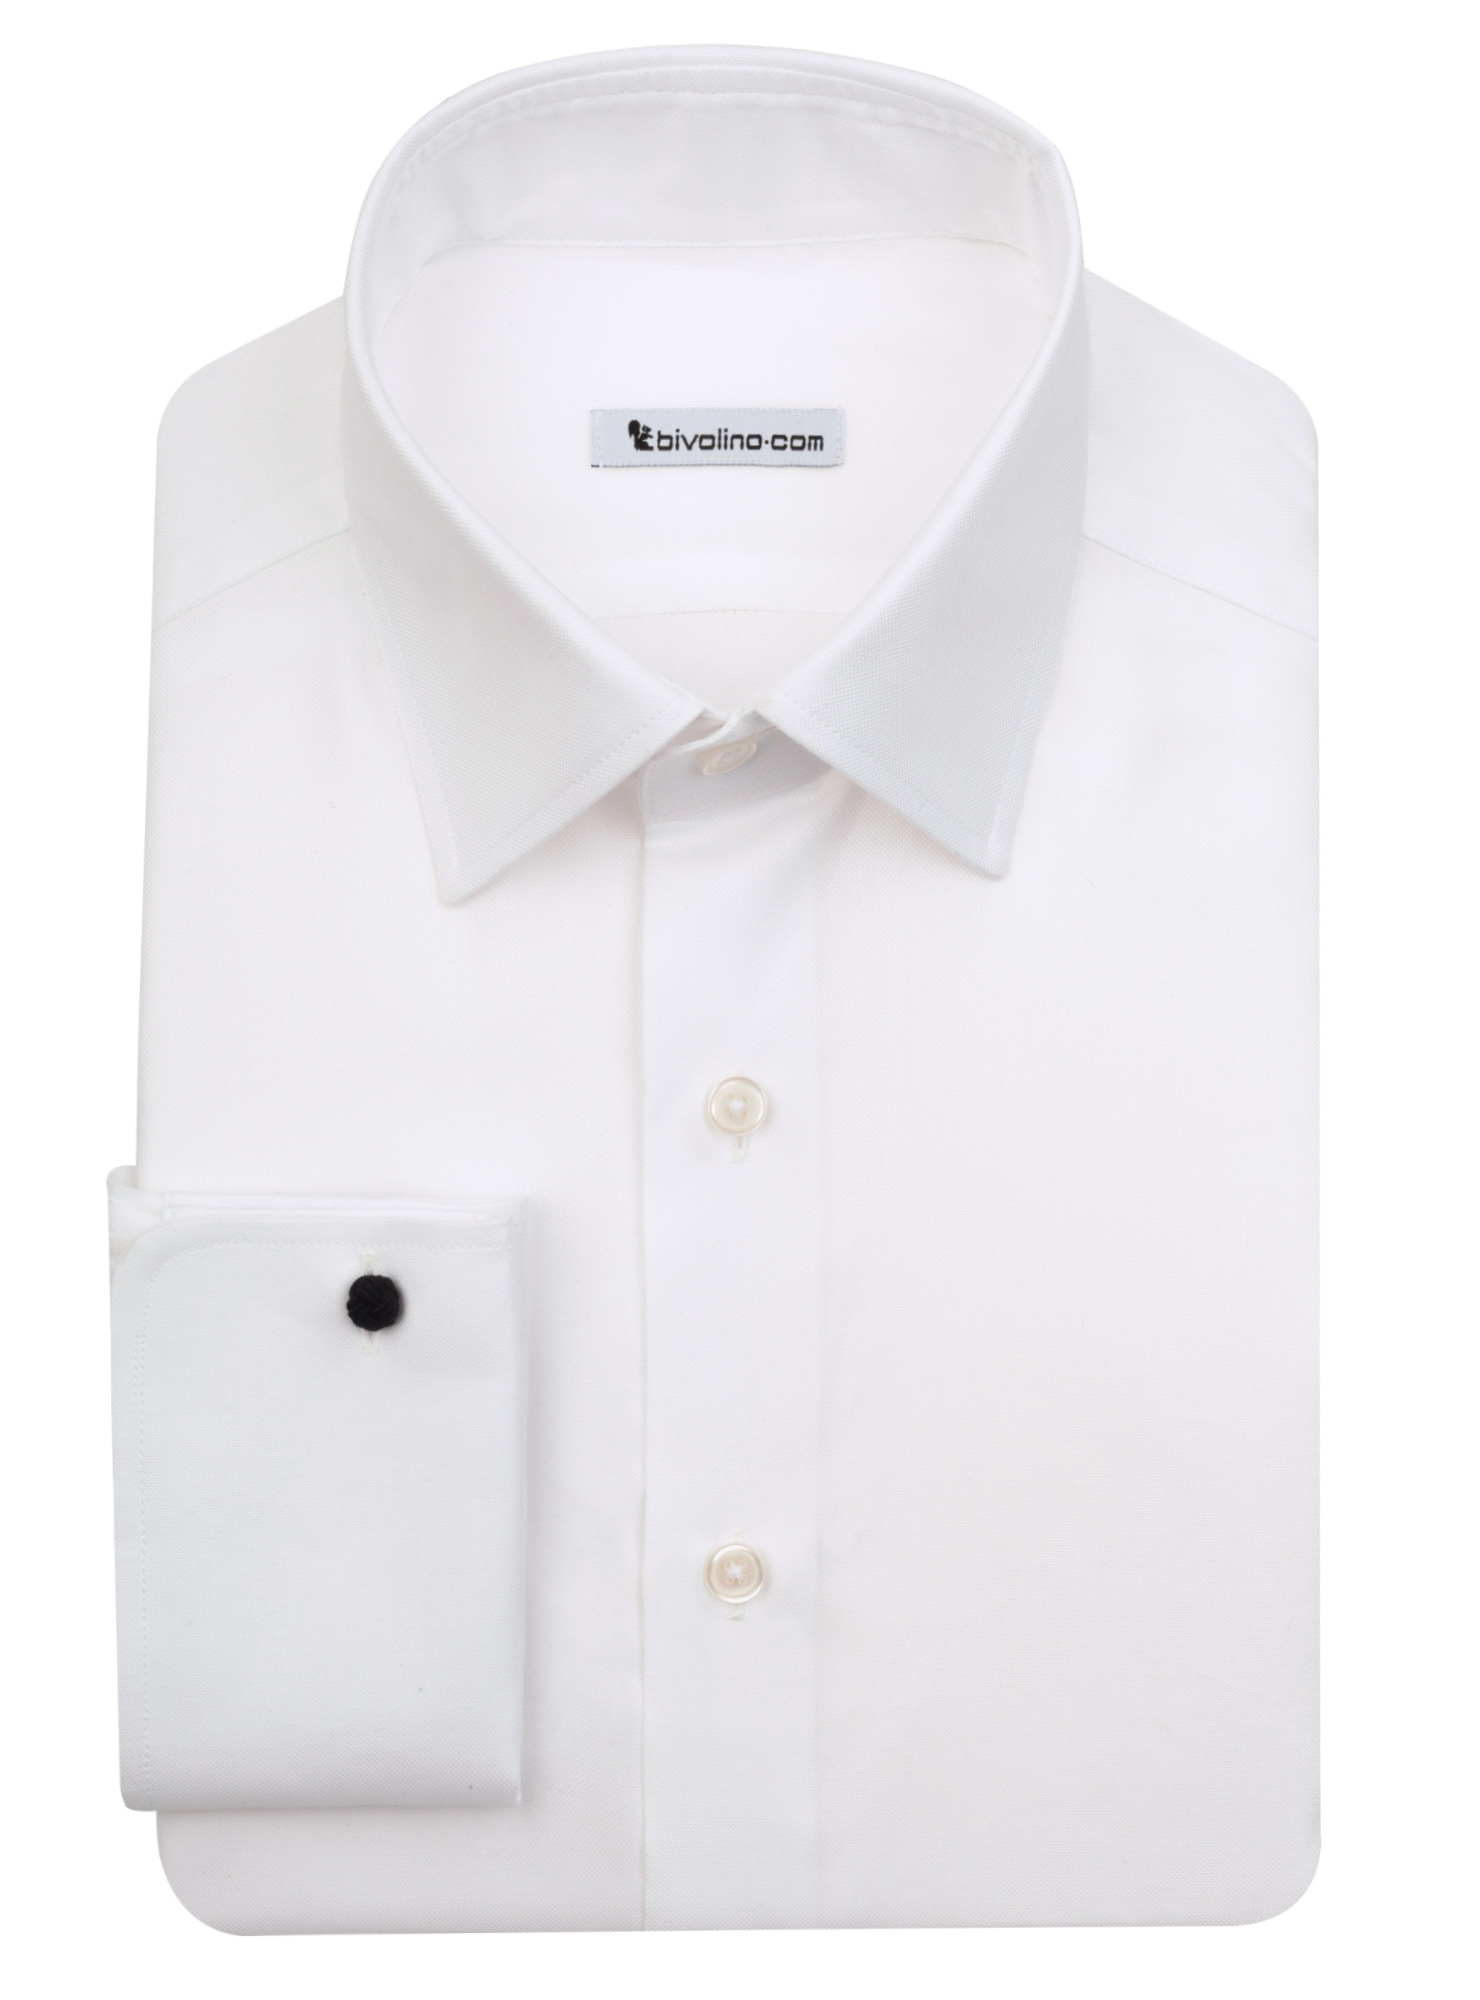 TRENTO - Oxford di cotone bianco royal camicia da uomo - LABA 2 